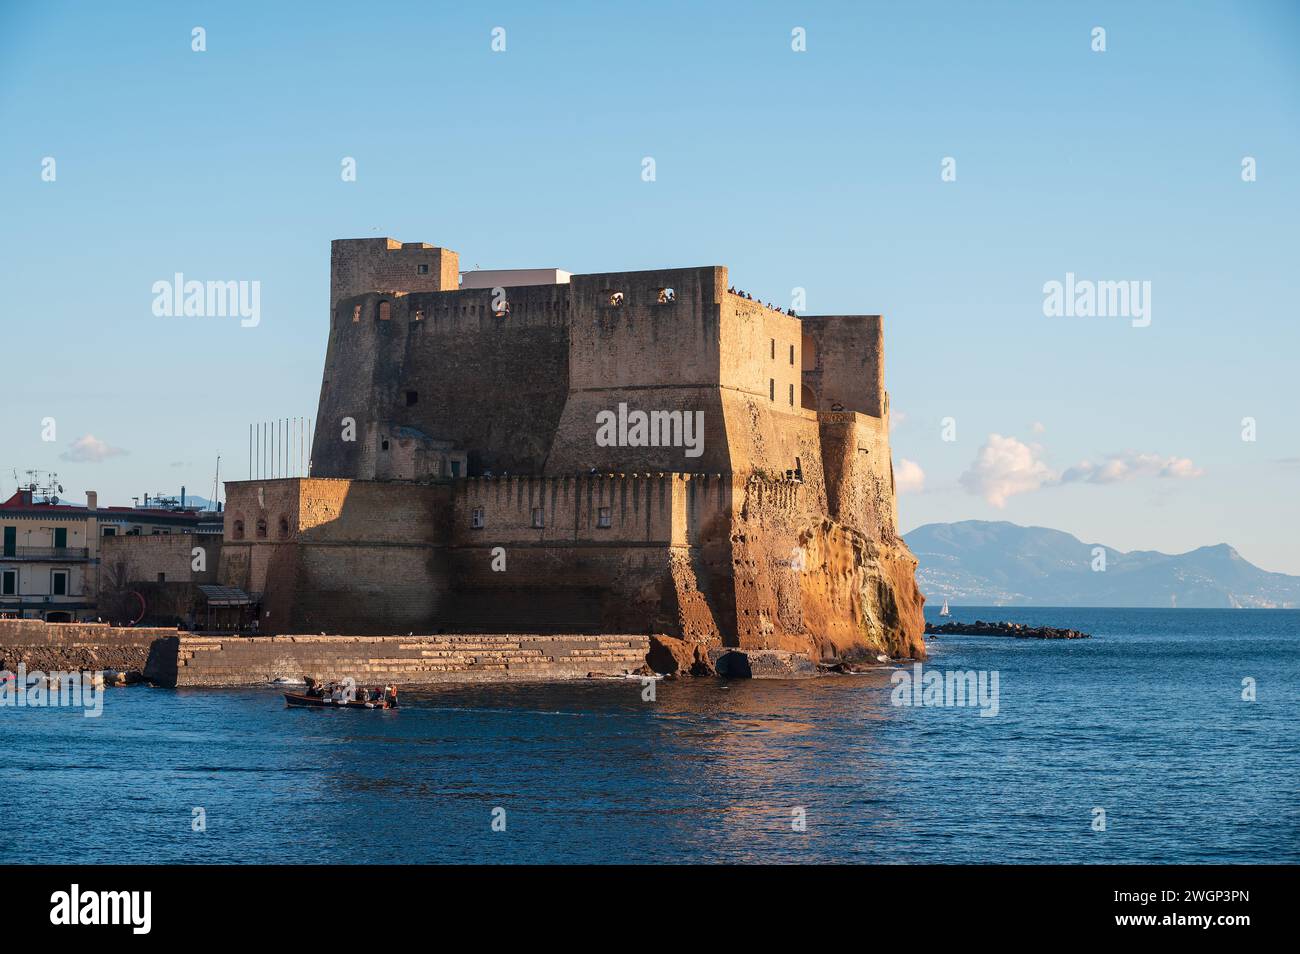 Neapel, Italien - 18. Dezember 2022: Auf einer felsigen Insel steht ein majestätischer Stein aus der Burg Ovo mit Blick auf den ruhigen Golf von neapel. Ikonisches Castel Stockfoto